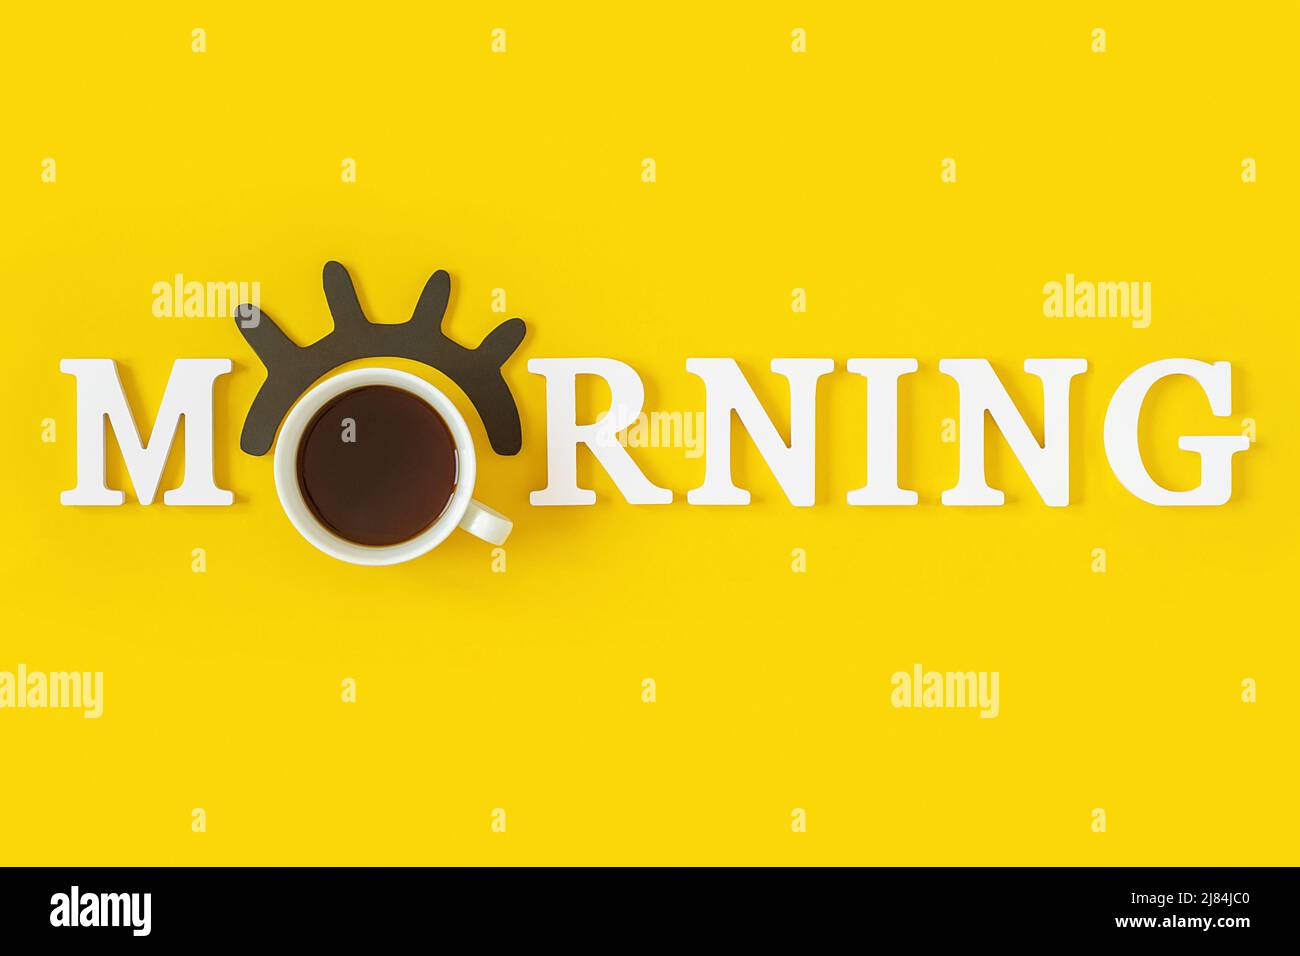 Kreatives Good Morning-Konzept. Weiße Buchstaben, schwarze Wimpern, Wecker und eine Tasse Kaffee auf gelbem Hintergrund. Draufsicht, Flat Lay. Grußkarte. Stockfoto